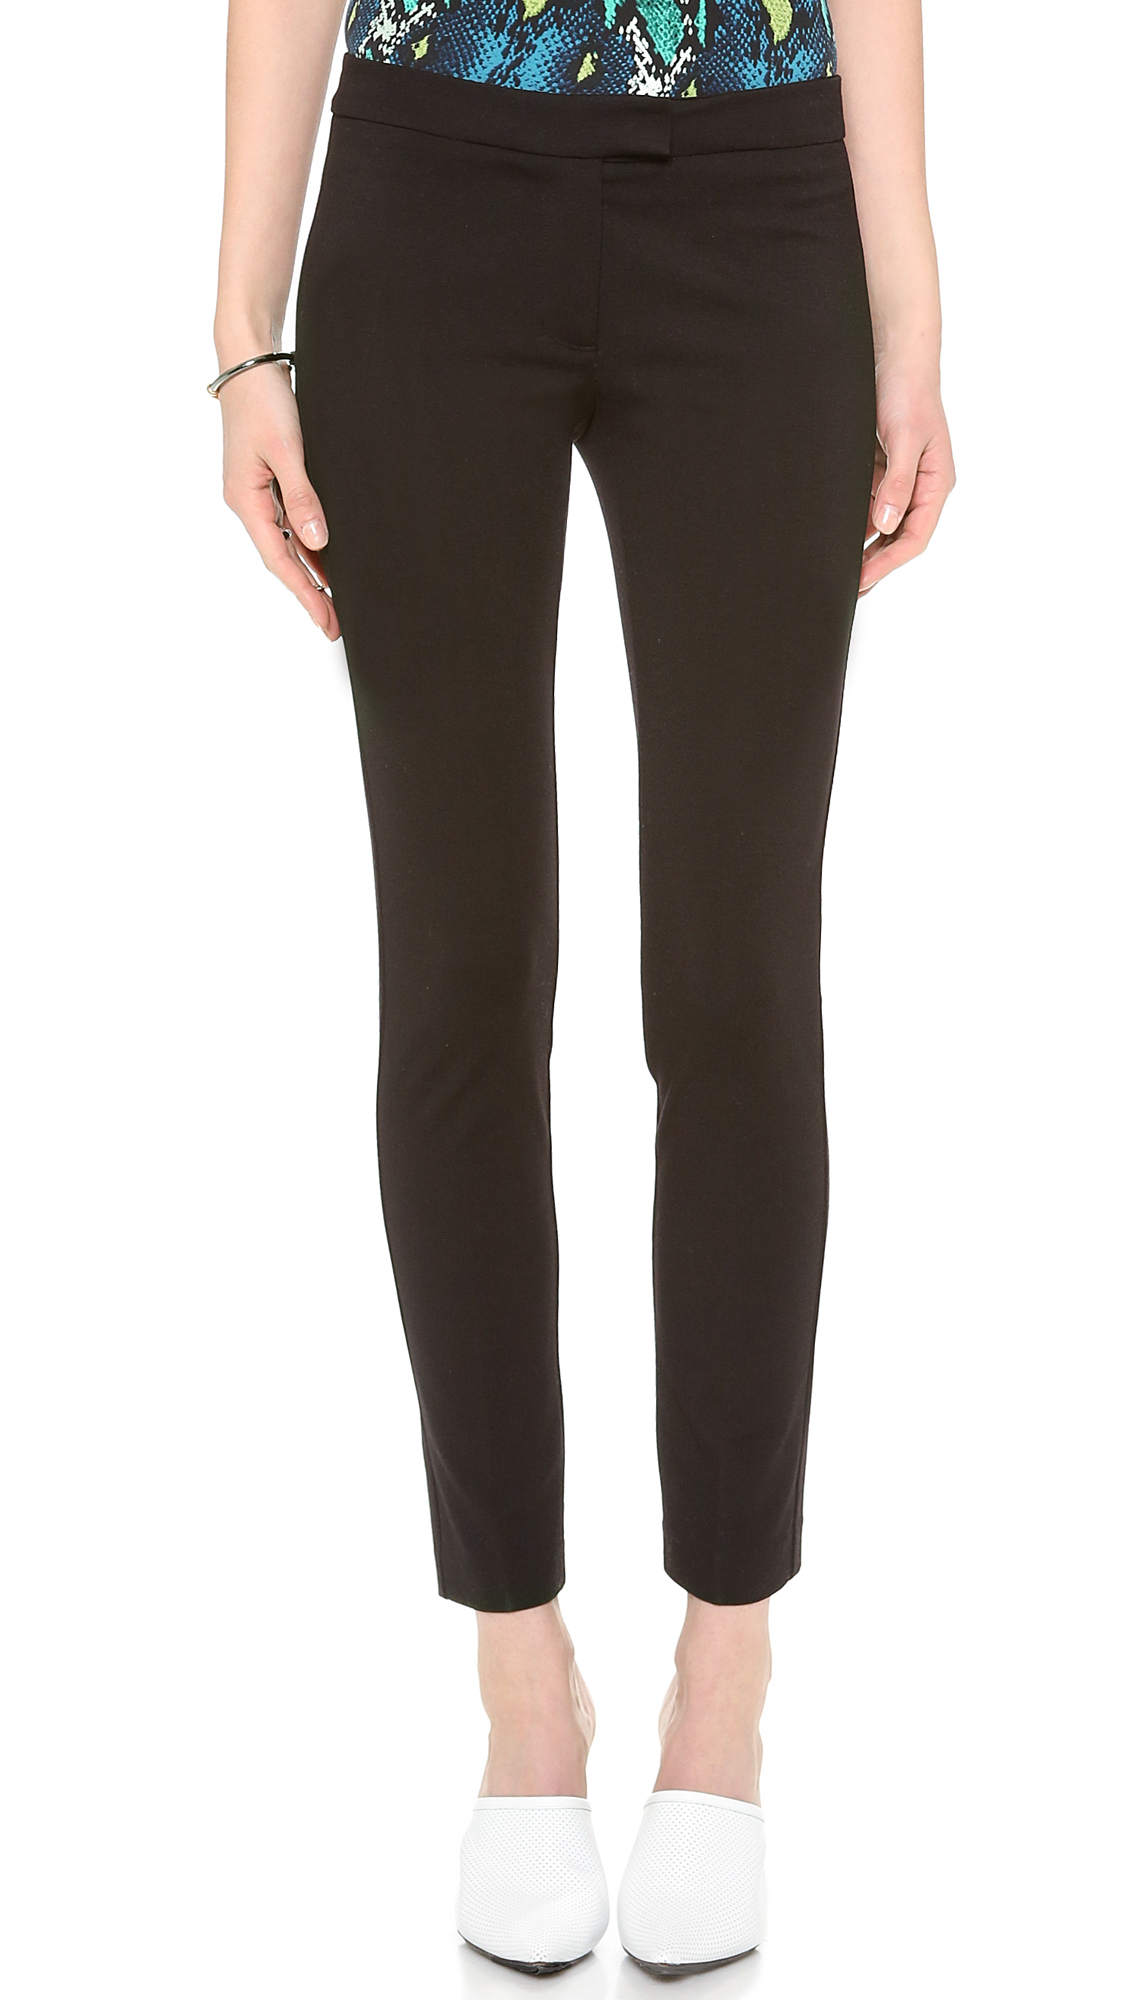 Lyst - Juicy couture Ponte Crop Pants in Black